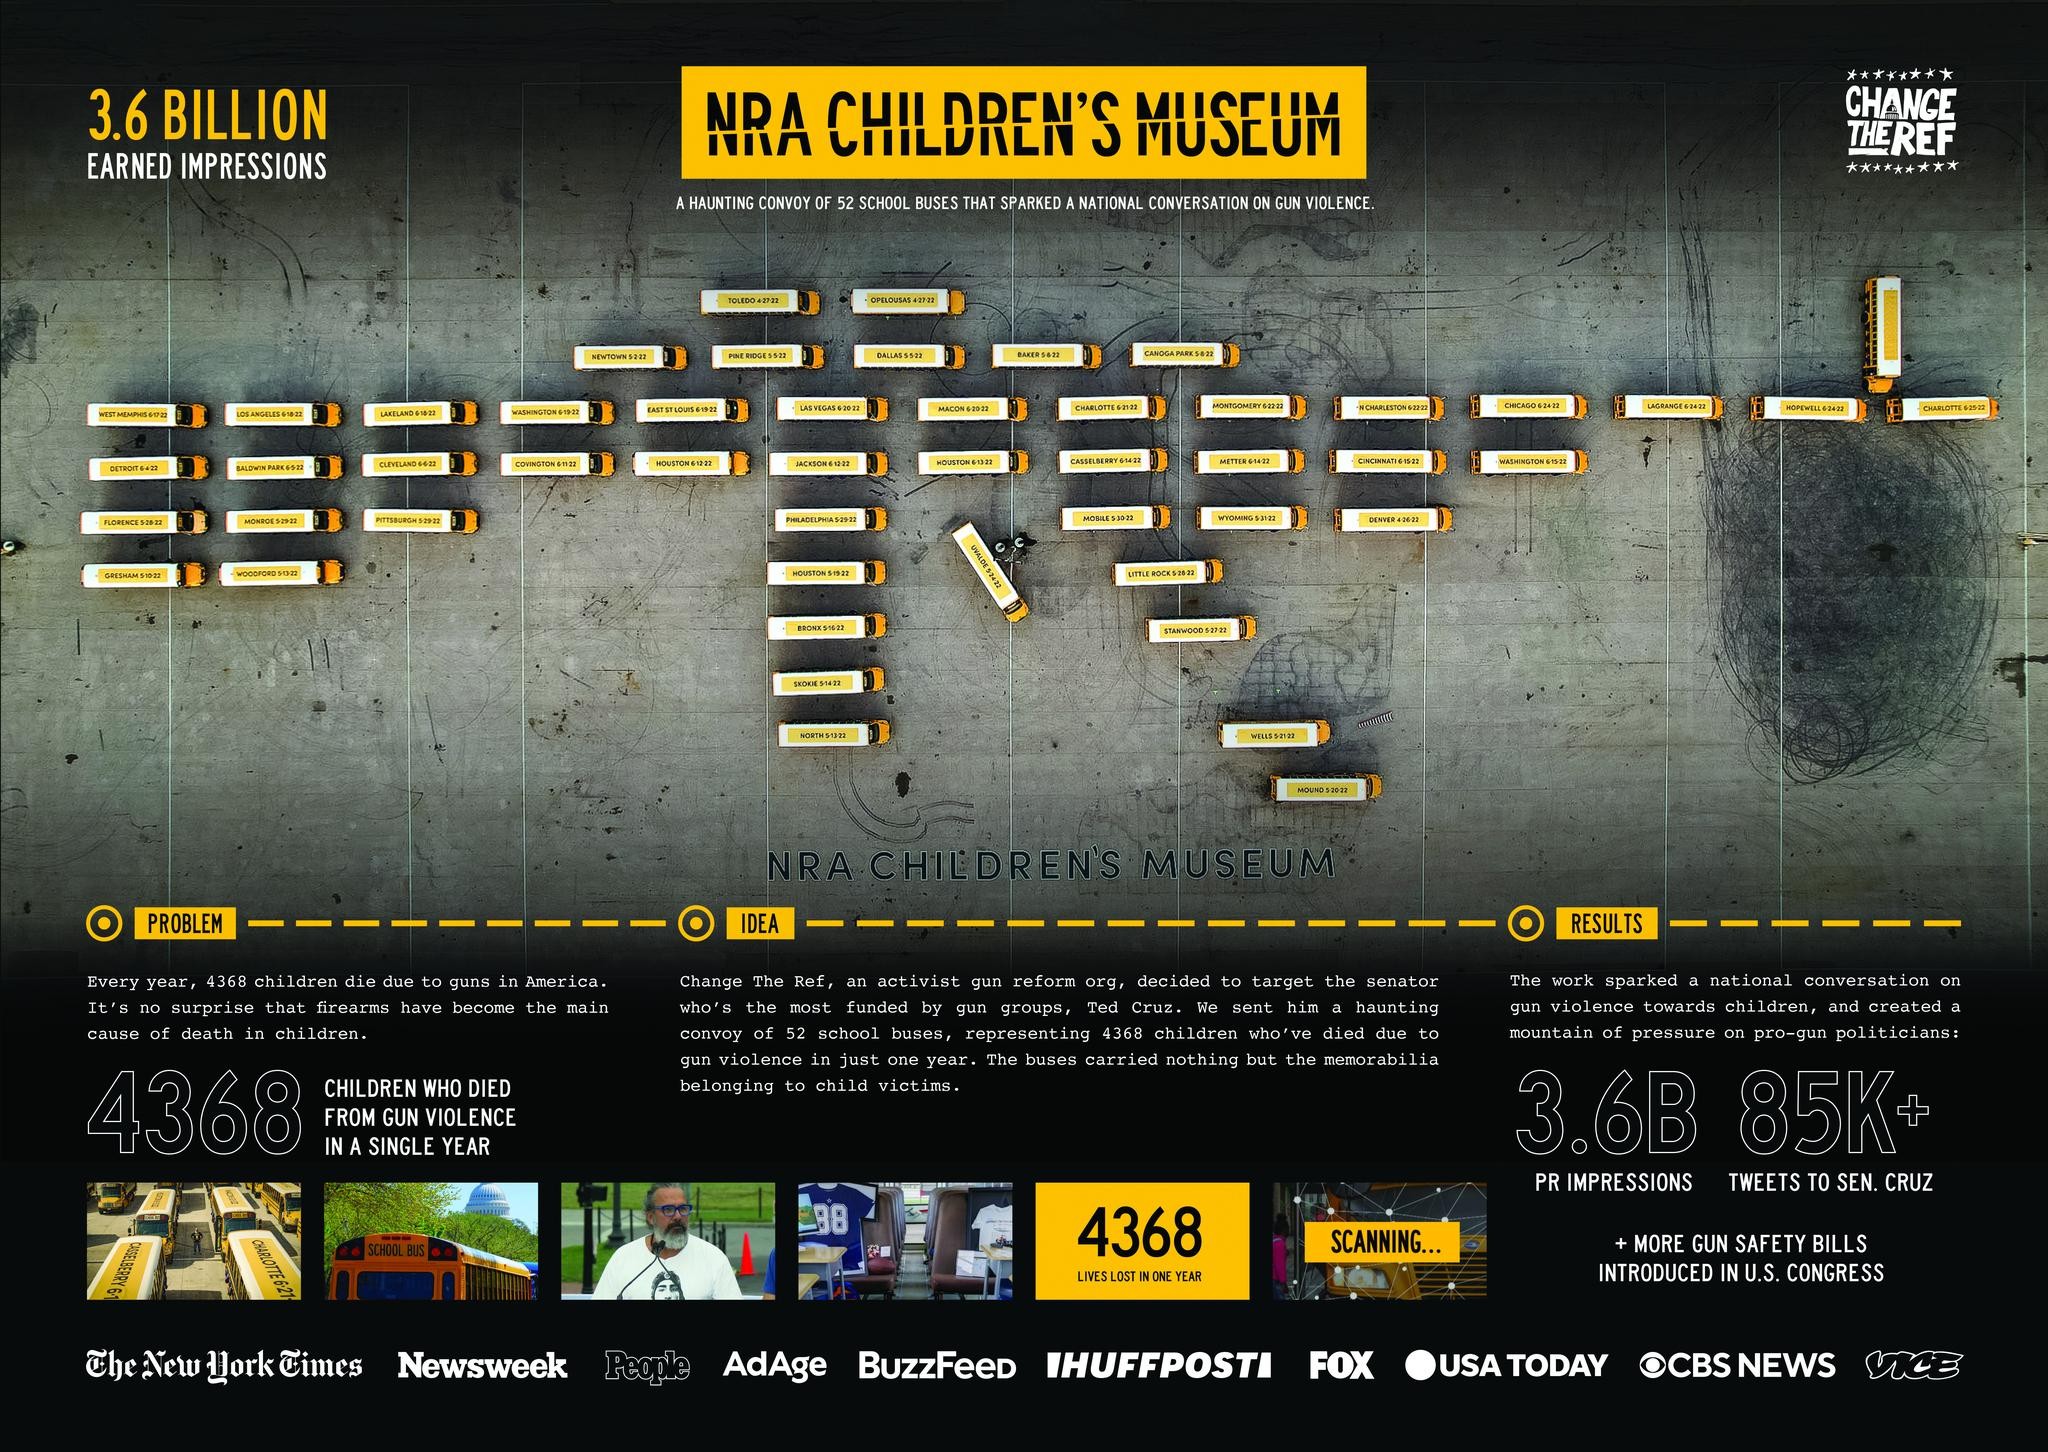 NRA CHILDREN'S MUSEUM